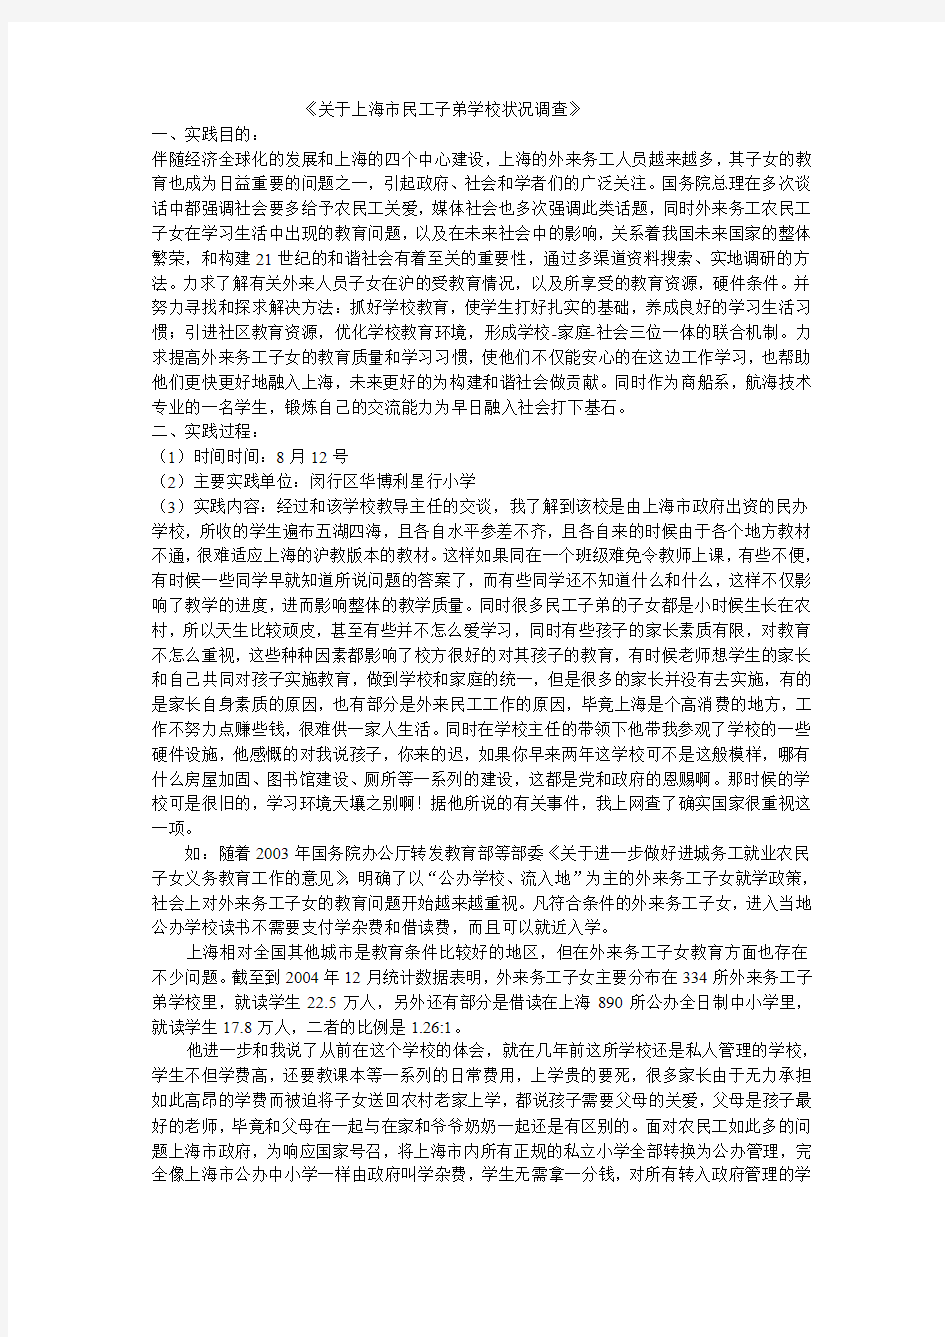 关于上海市民工子弟学校状况调查